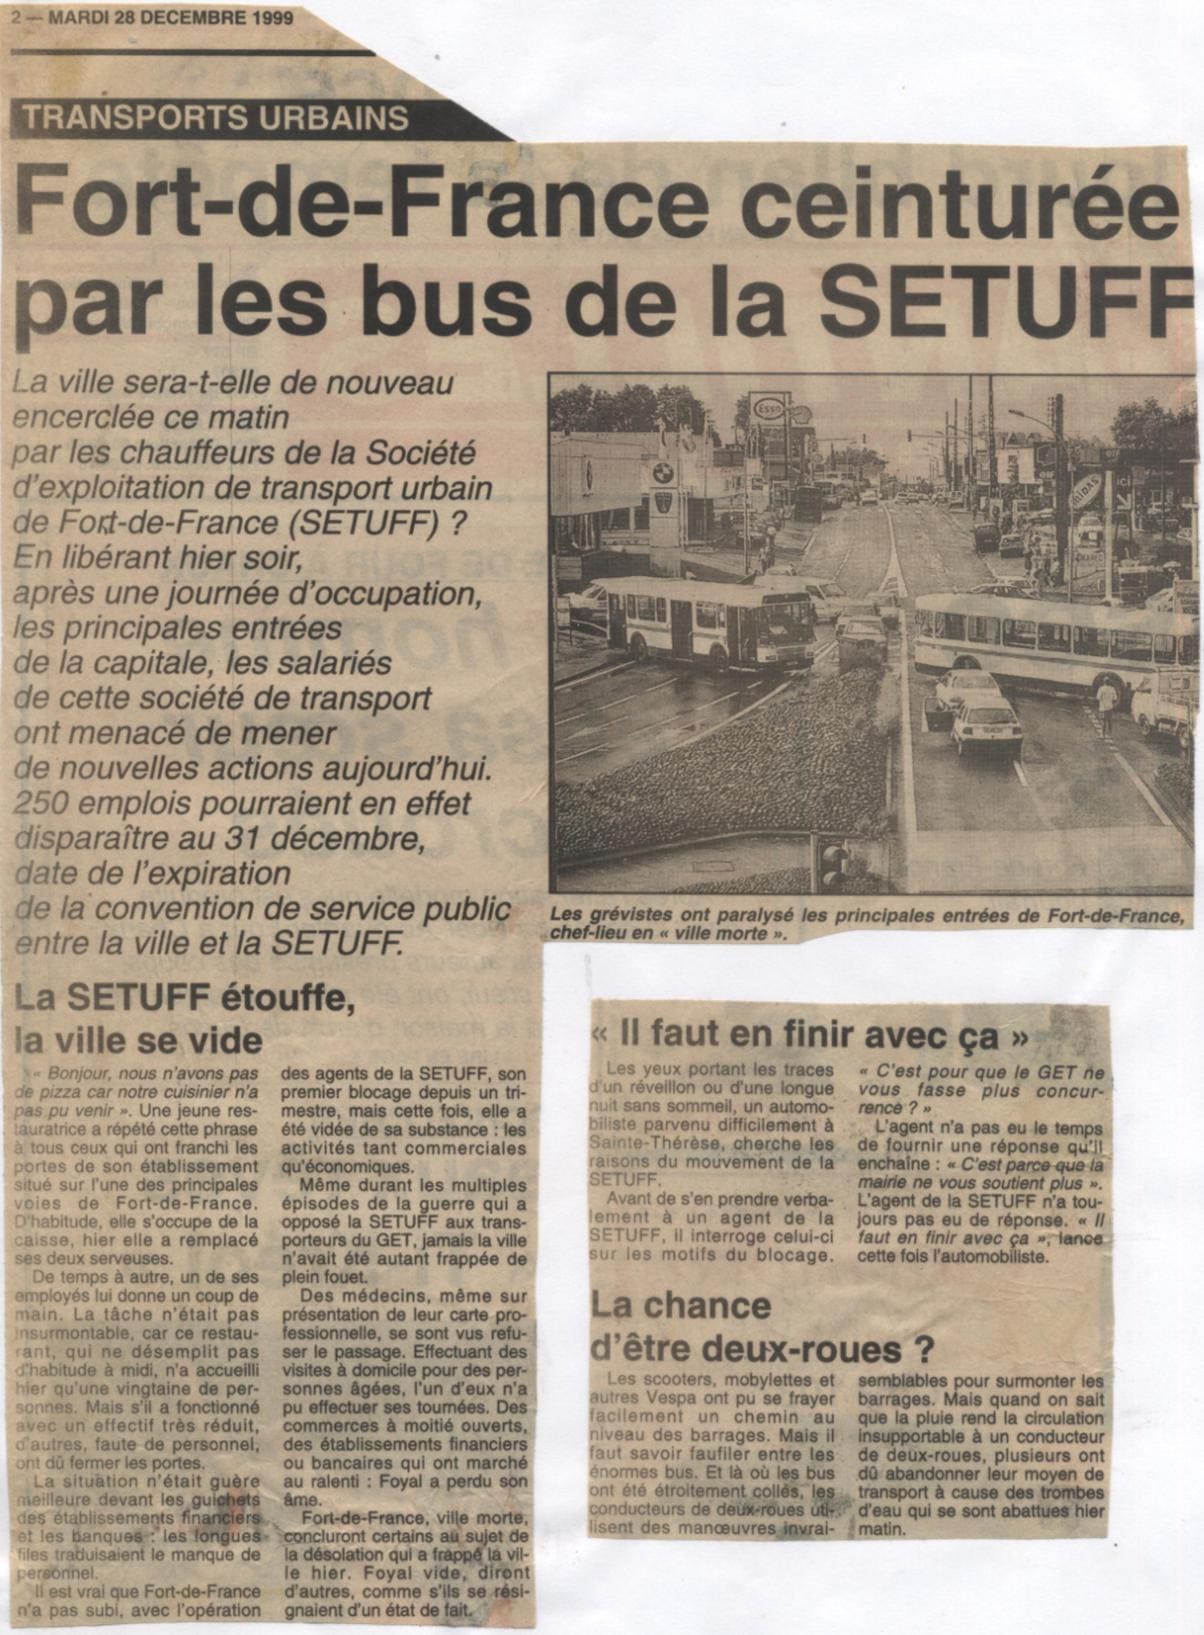 Fort-de-France ceinturée par les bus de la SETUFF